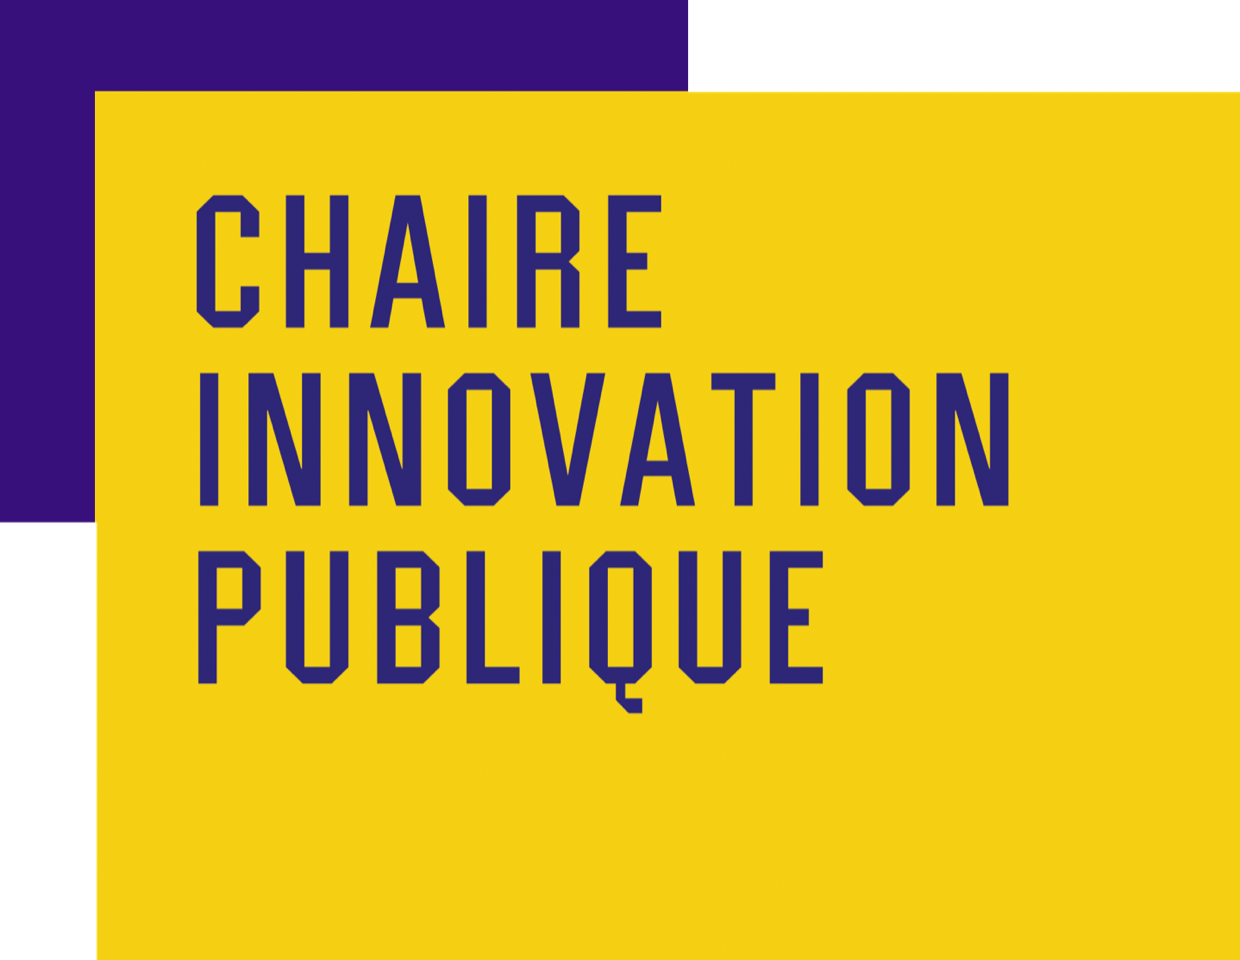 Chaire Innovation Publique